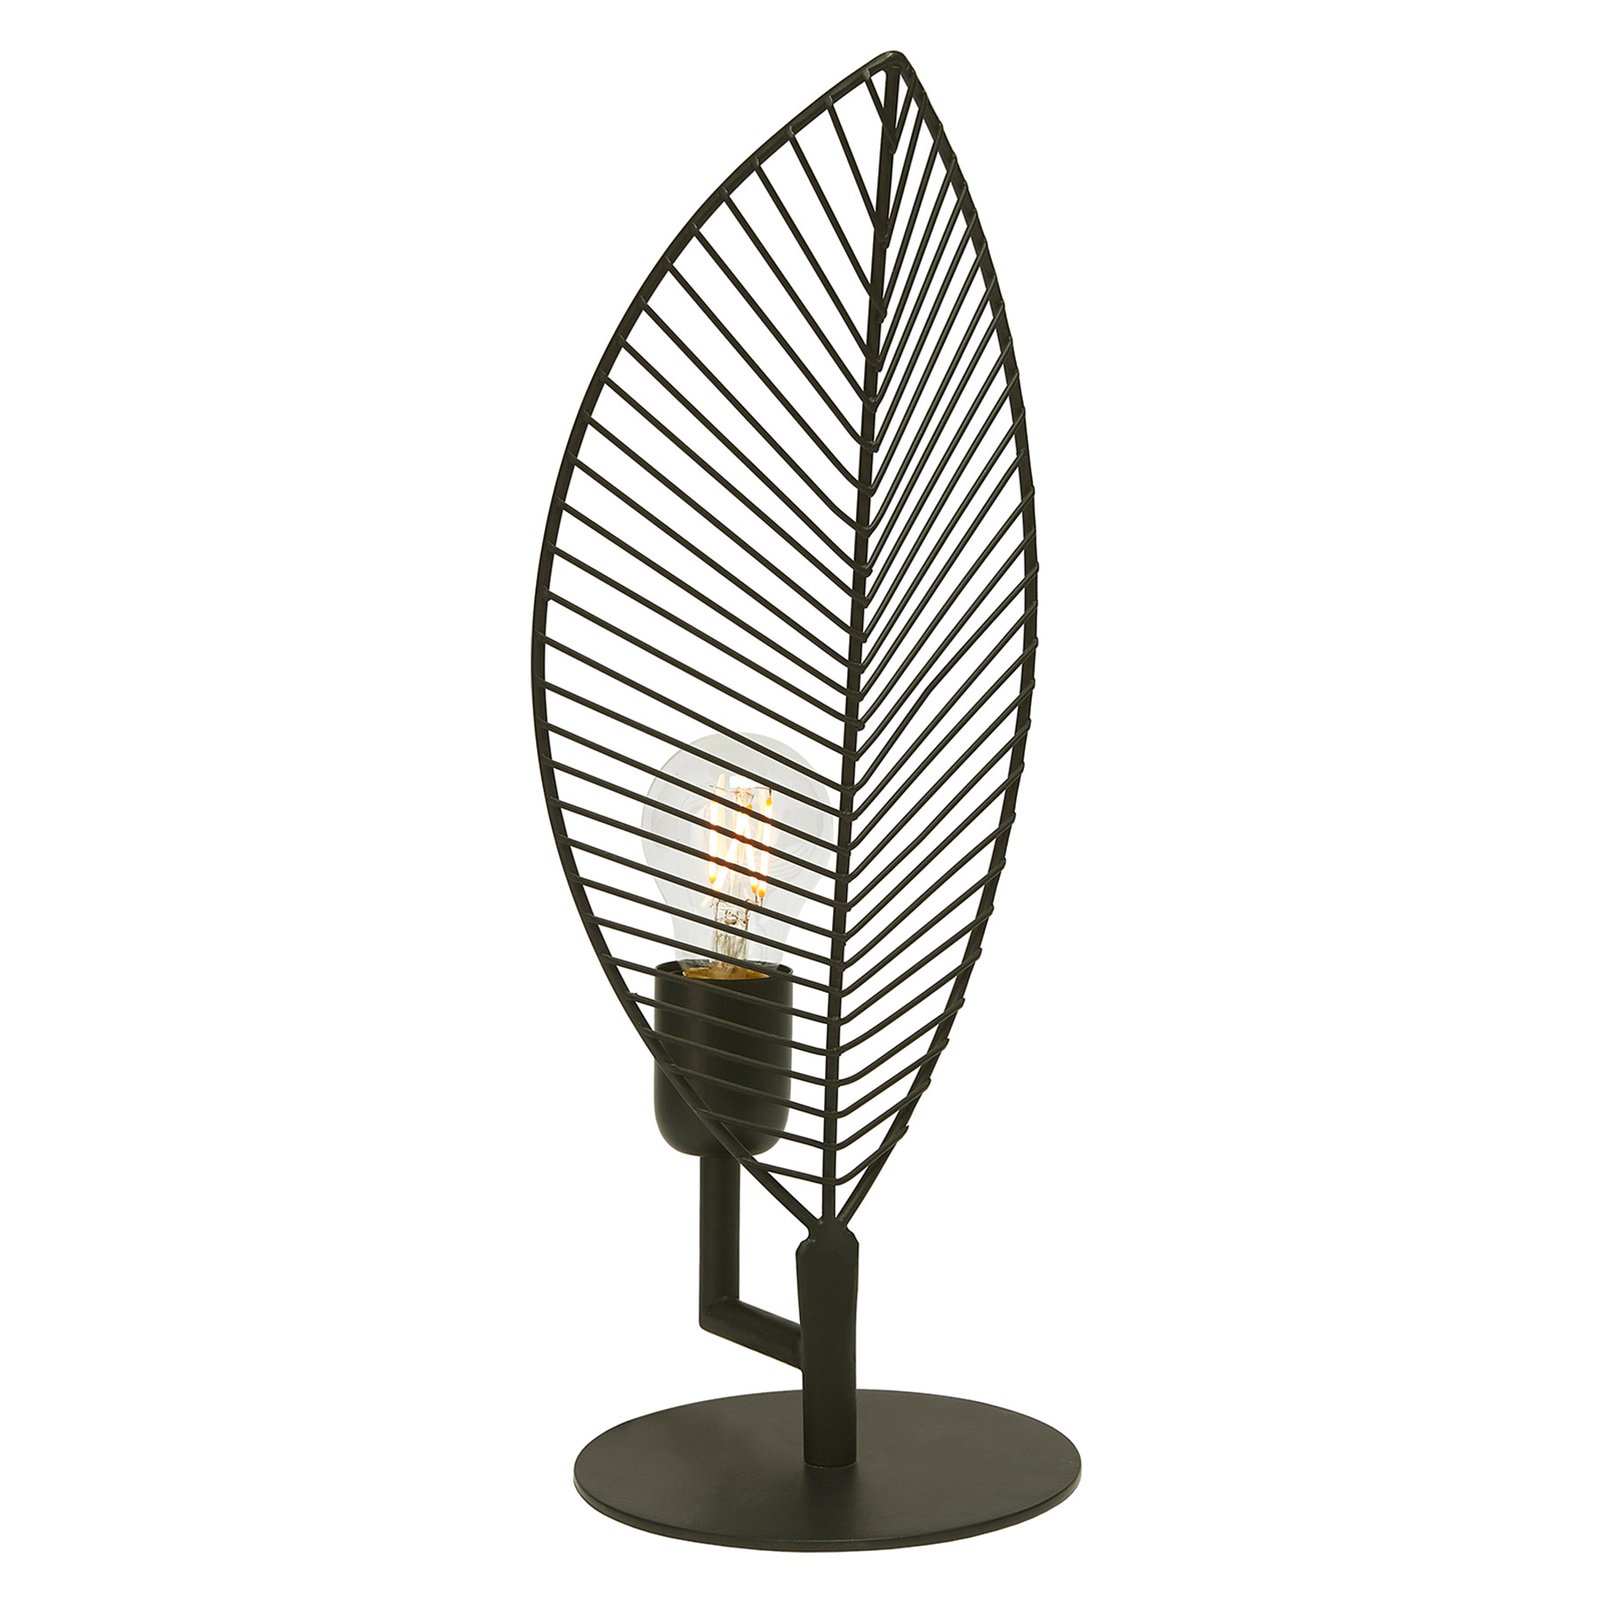 PR Home Elm lampa stołowa w kształcie liścia, wysokość 42 cm